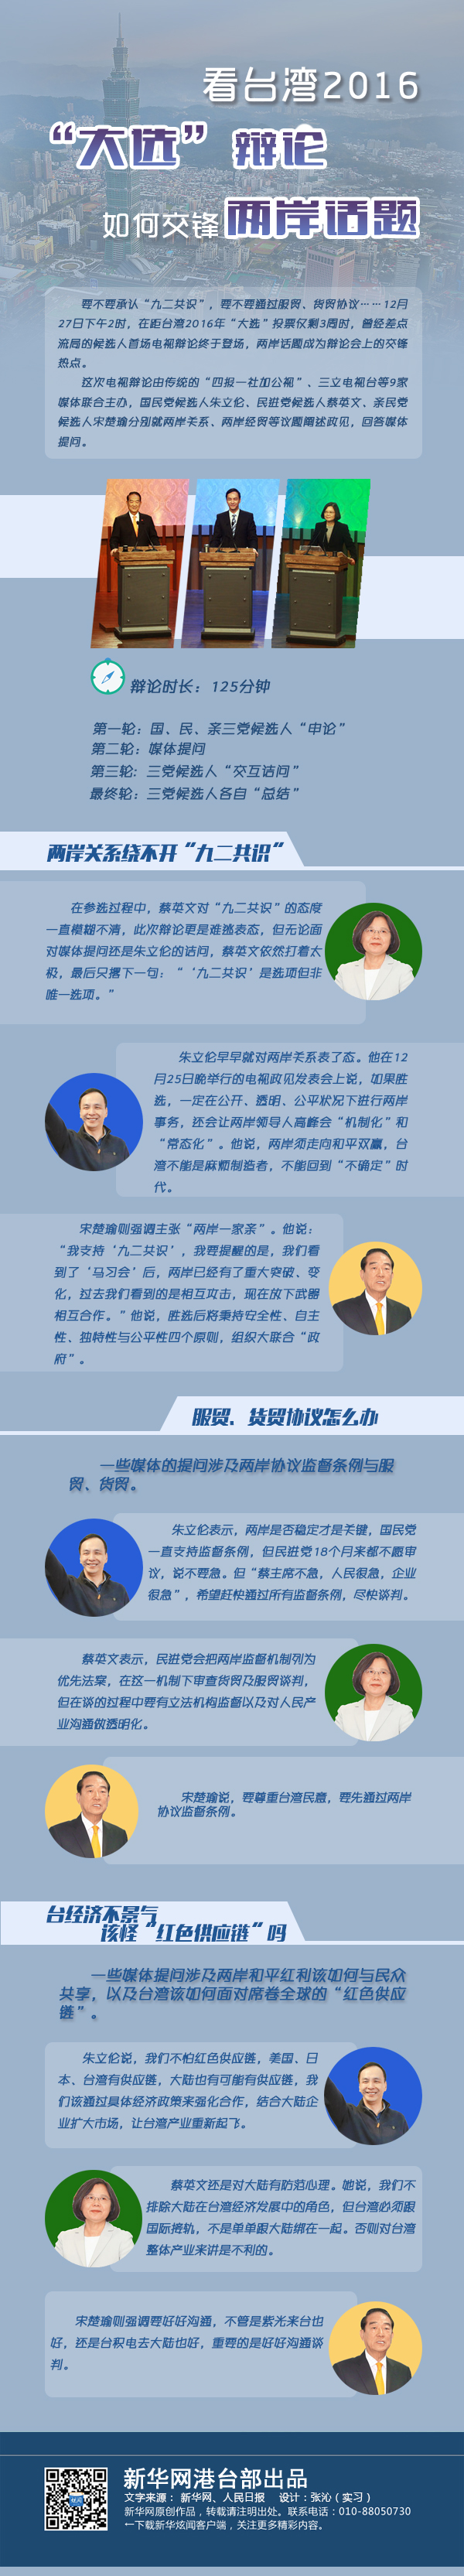 圖説:看臺灣2016“大選”辯論如何交鋒兩岸話題